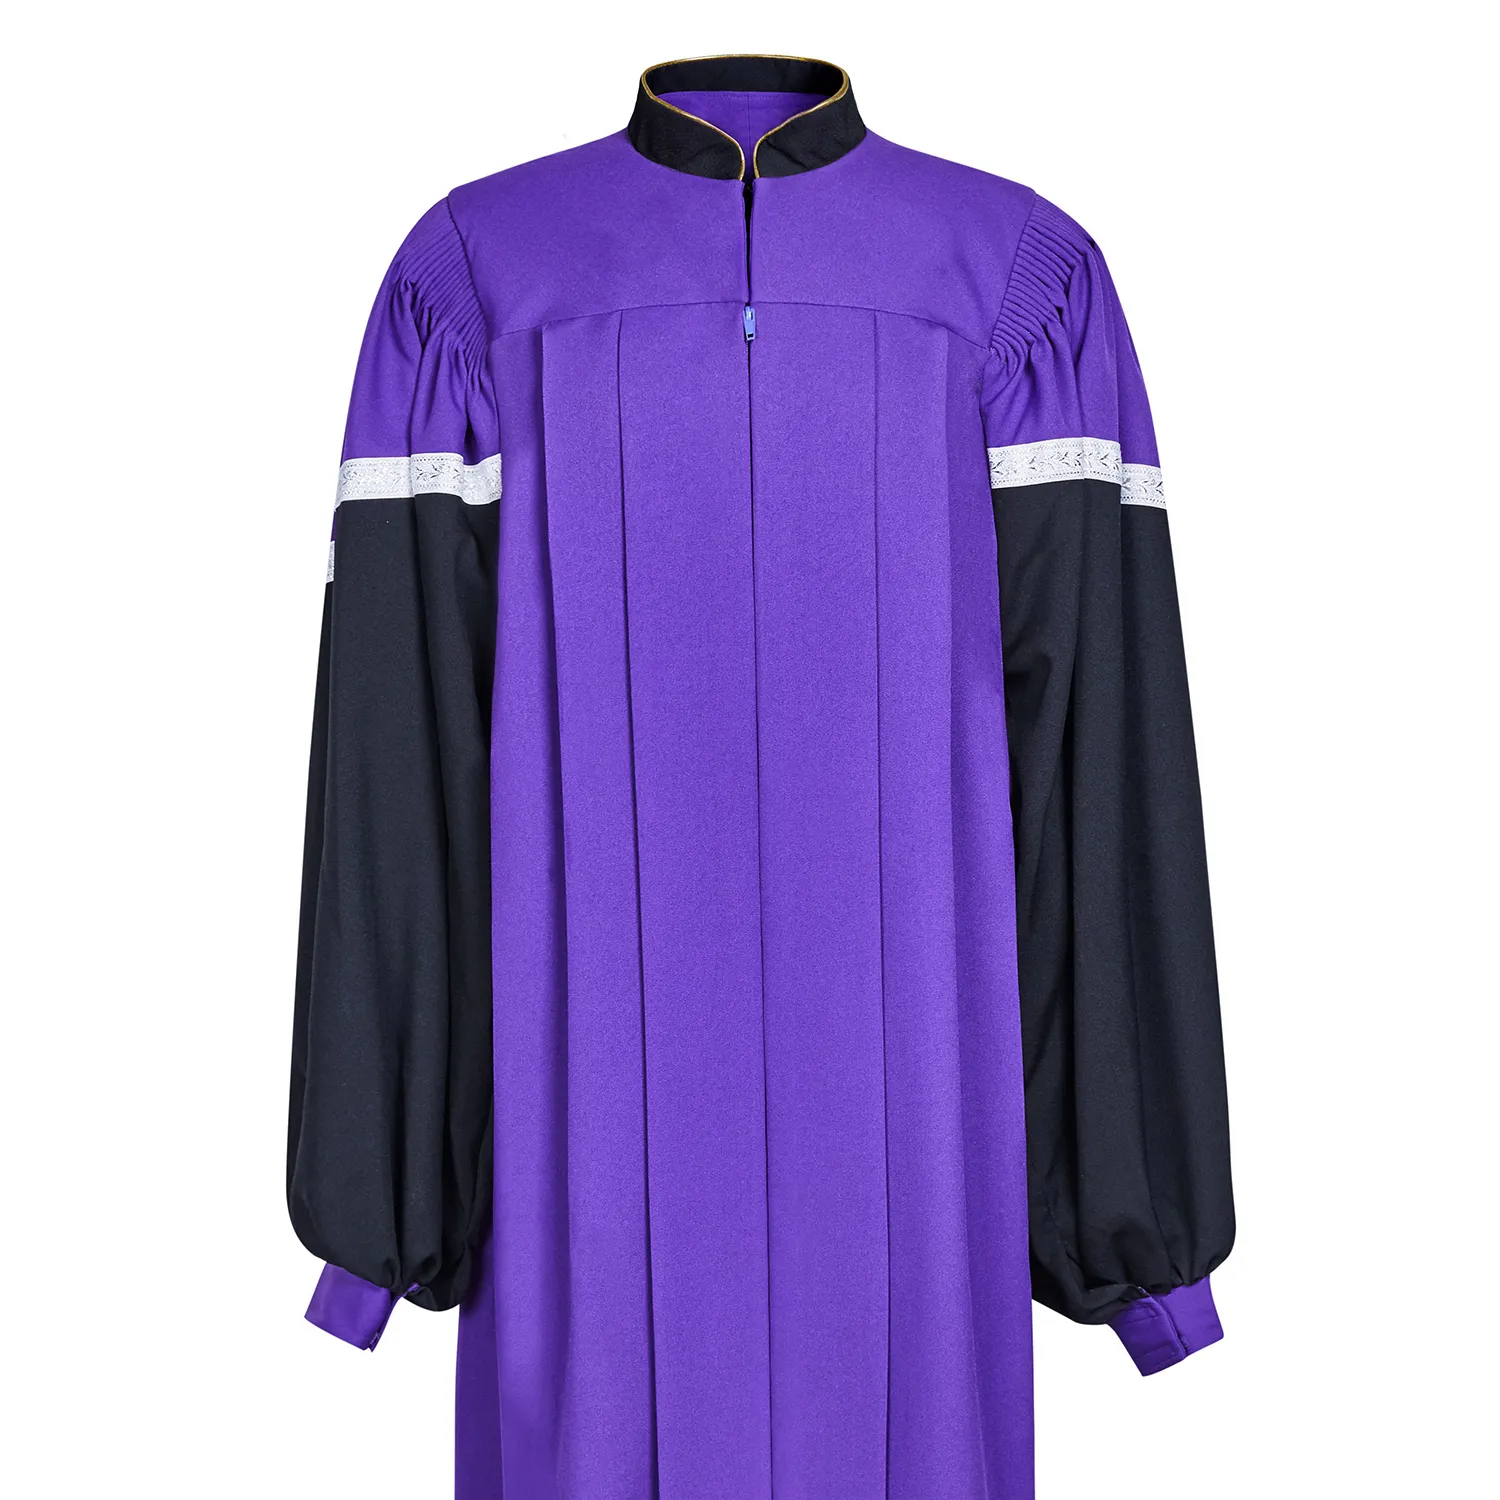 Personalización al por mayor de túnicas de coro de iglesia nueva púrpura